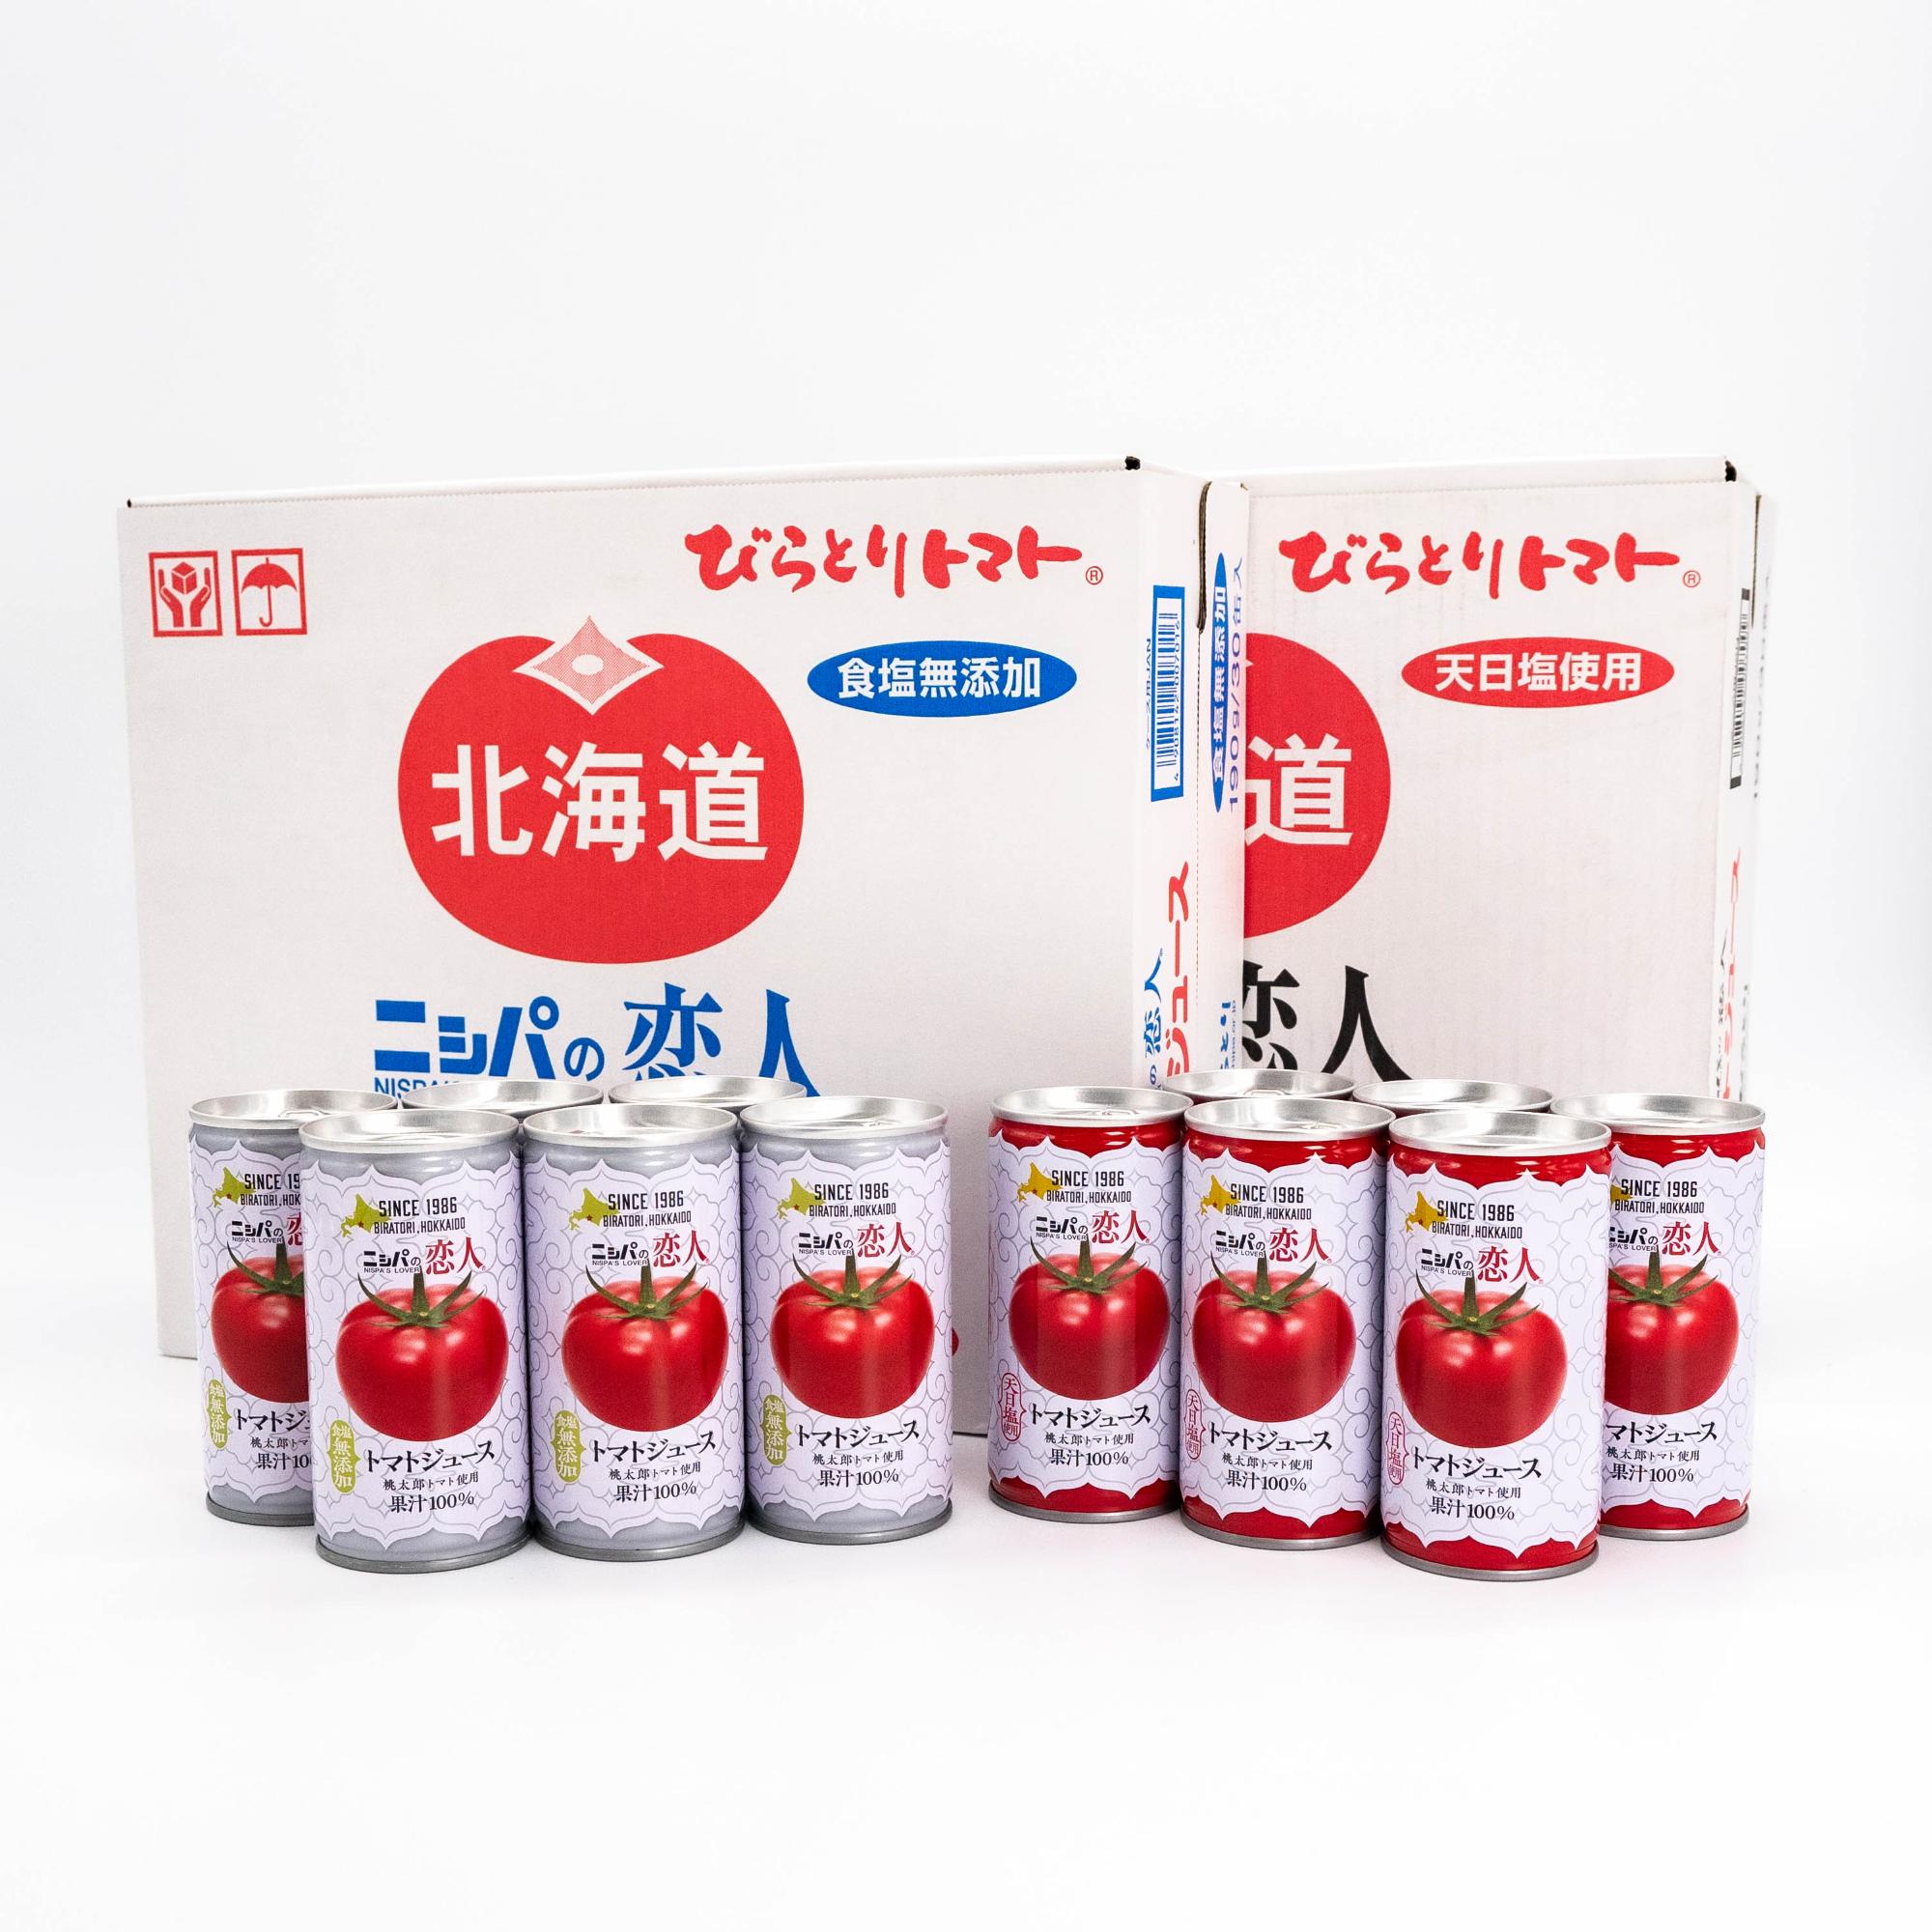 「ニㇱパの恋人」トマトジュース無塩・有塩缶